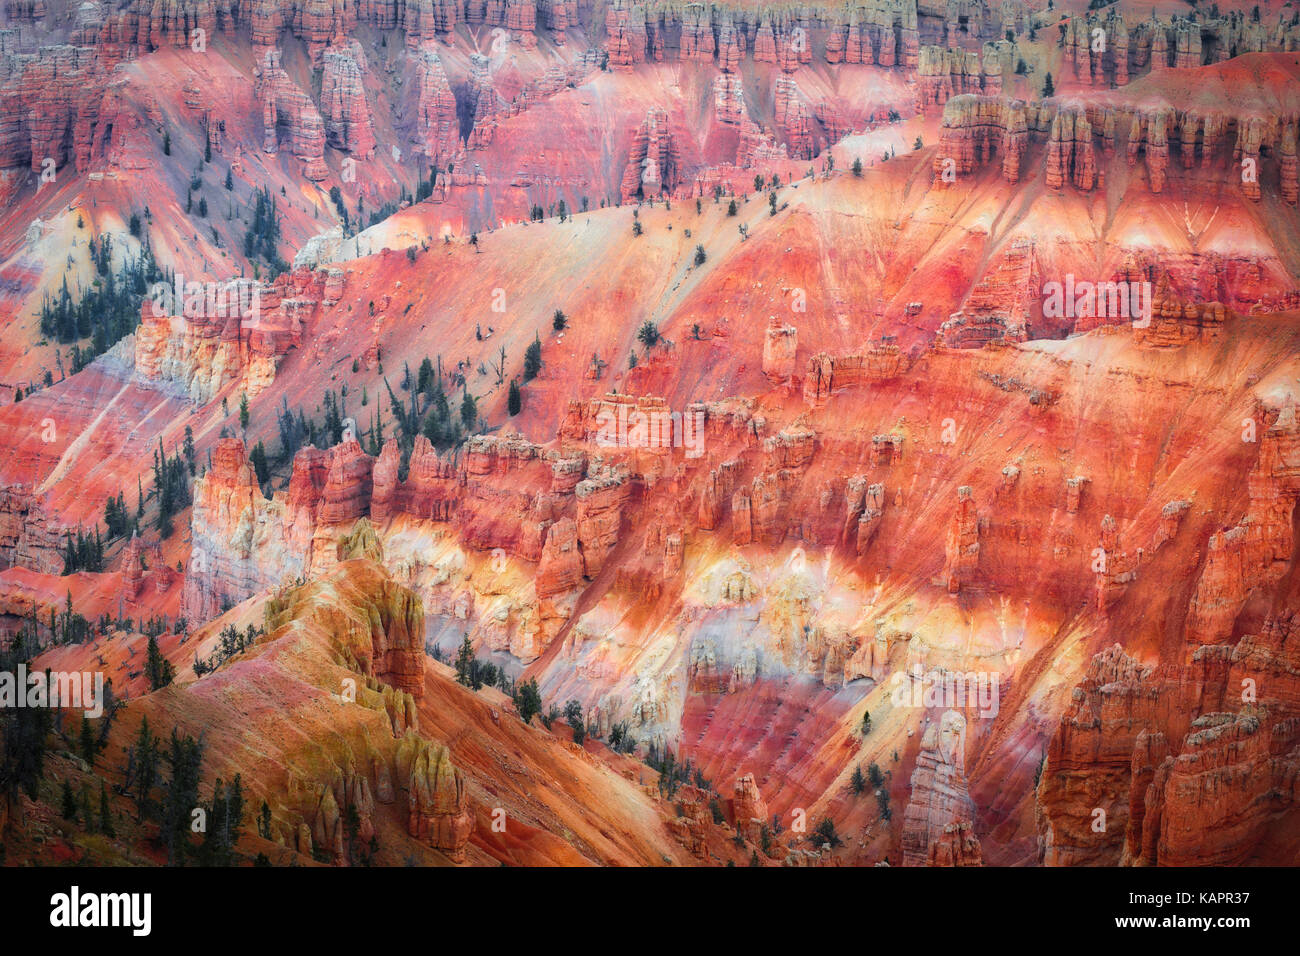 Ferro e ossidi di magnesio creare queste splendide rosso e viola i colori tra le hoodoo anfiteatro in Utah's Cedar Breaks National Monument. Foto Stock